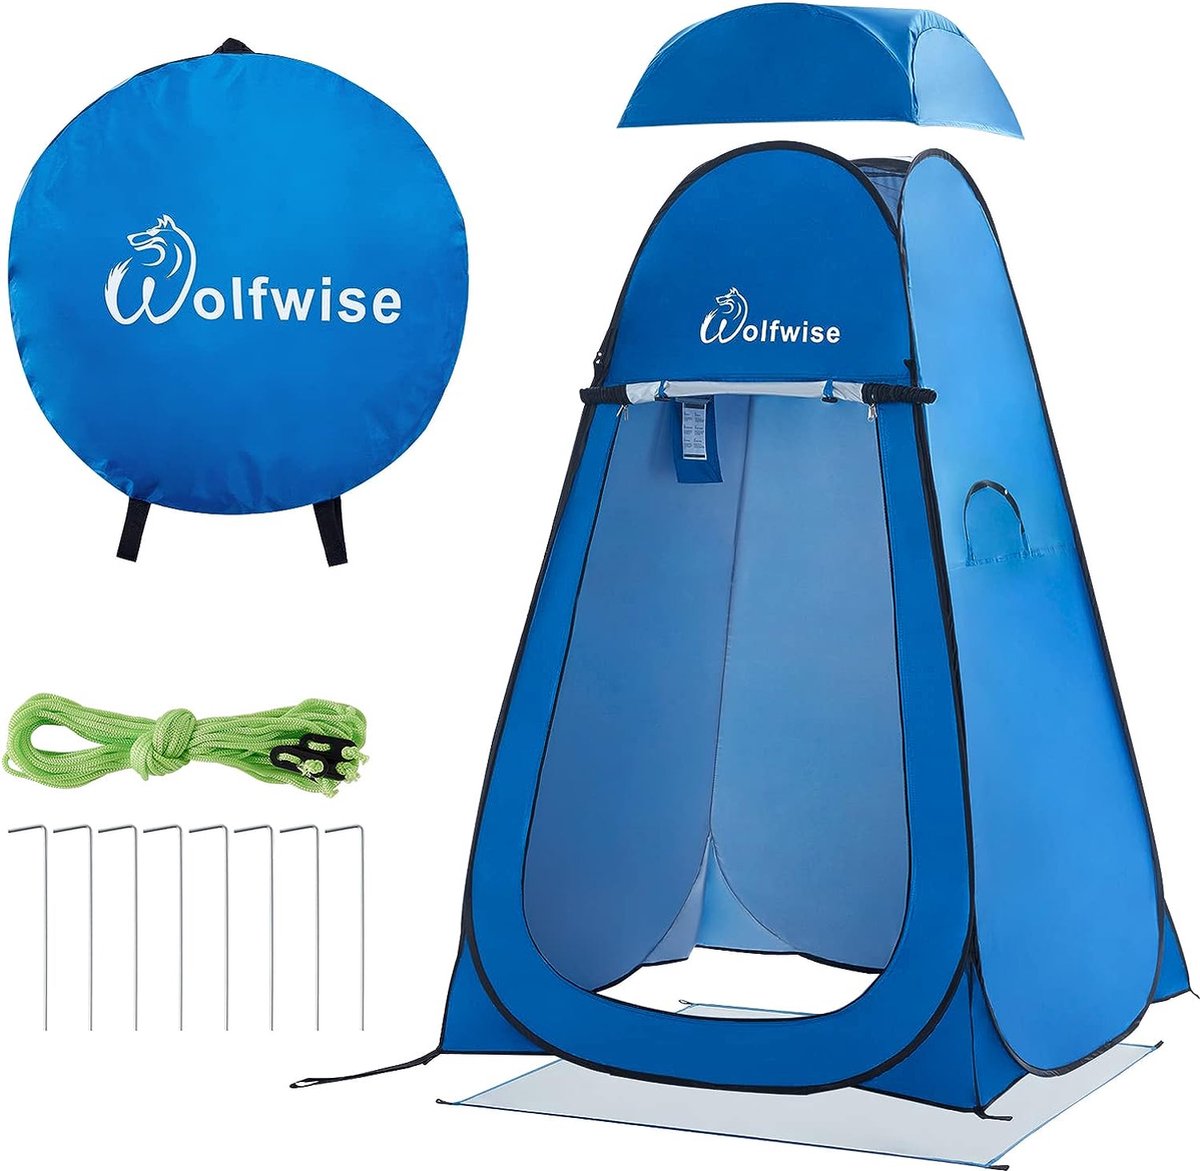 pop-up omkleedtent, toilettent, douchetent voor op de camping, mobiel voor buiten, draagbare tent ten behoeve van privacy, blauw